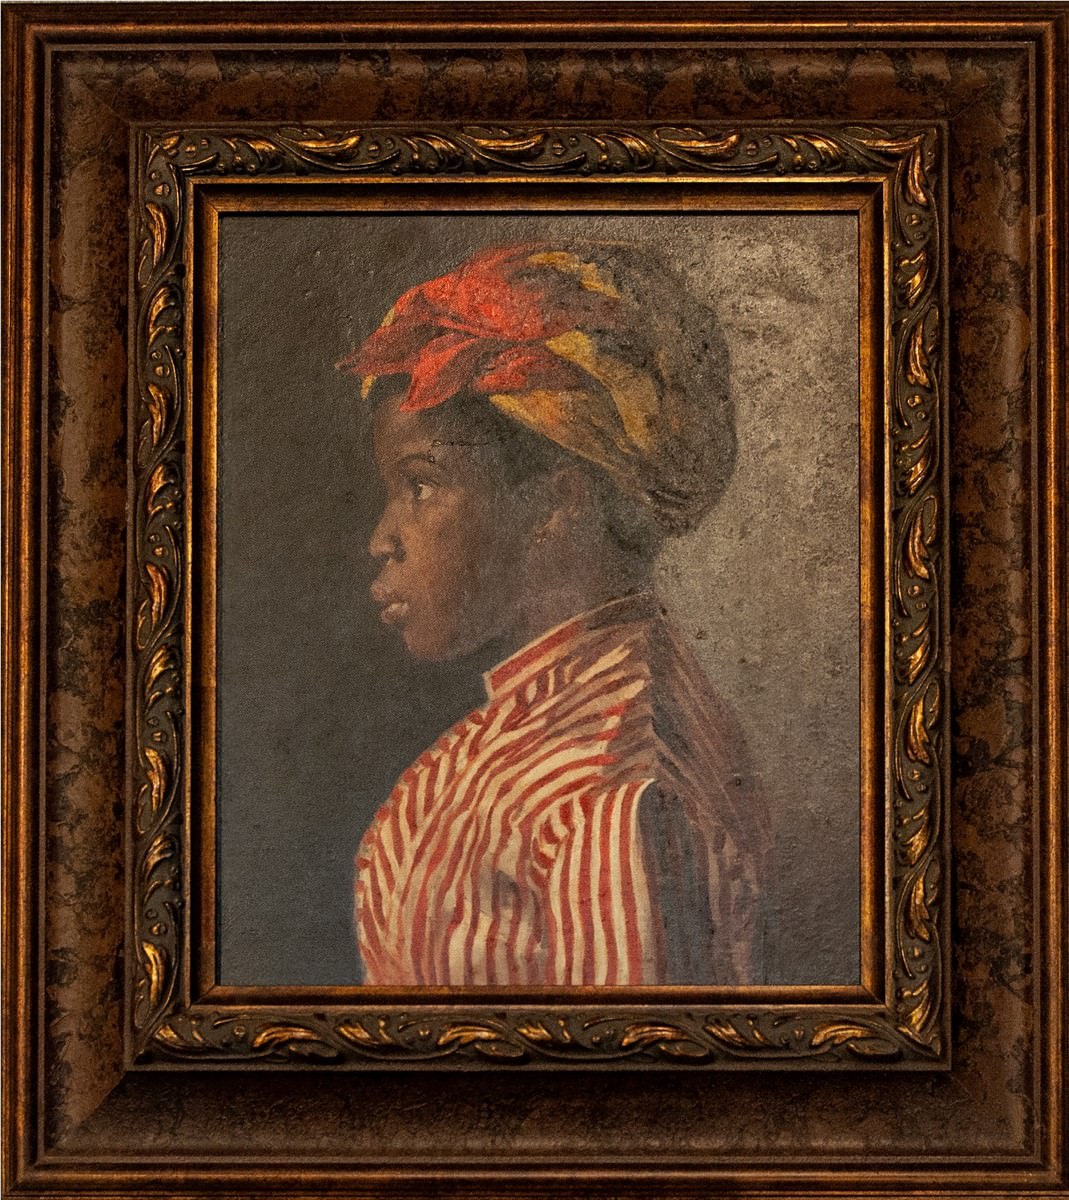 بيلميرو دي ألميدا - امرأة شابة سوداء الشكل, في وقت مبكر 1880. صور: دانييلا Paoliello.